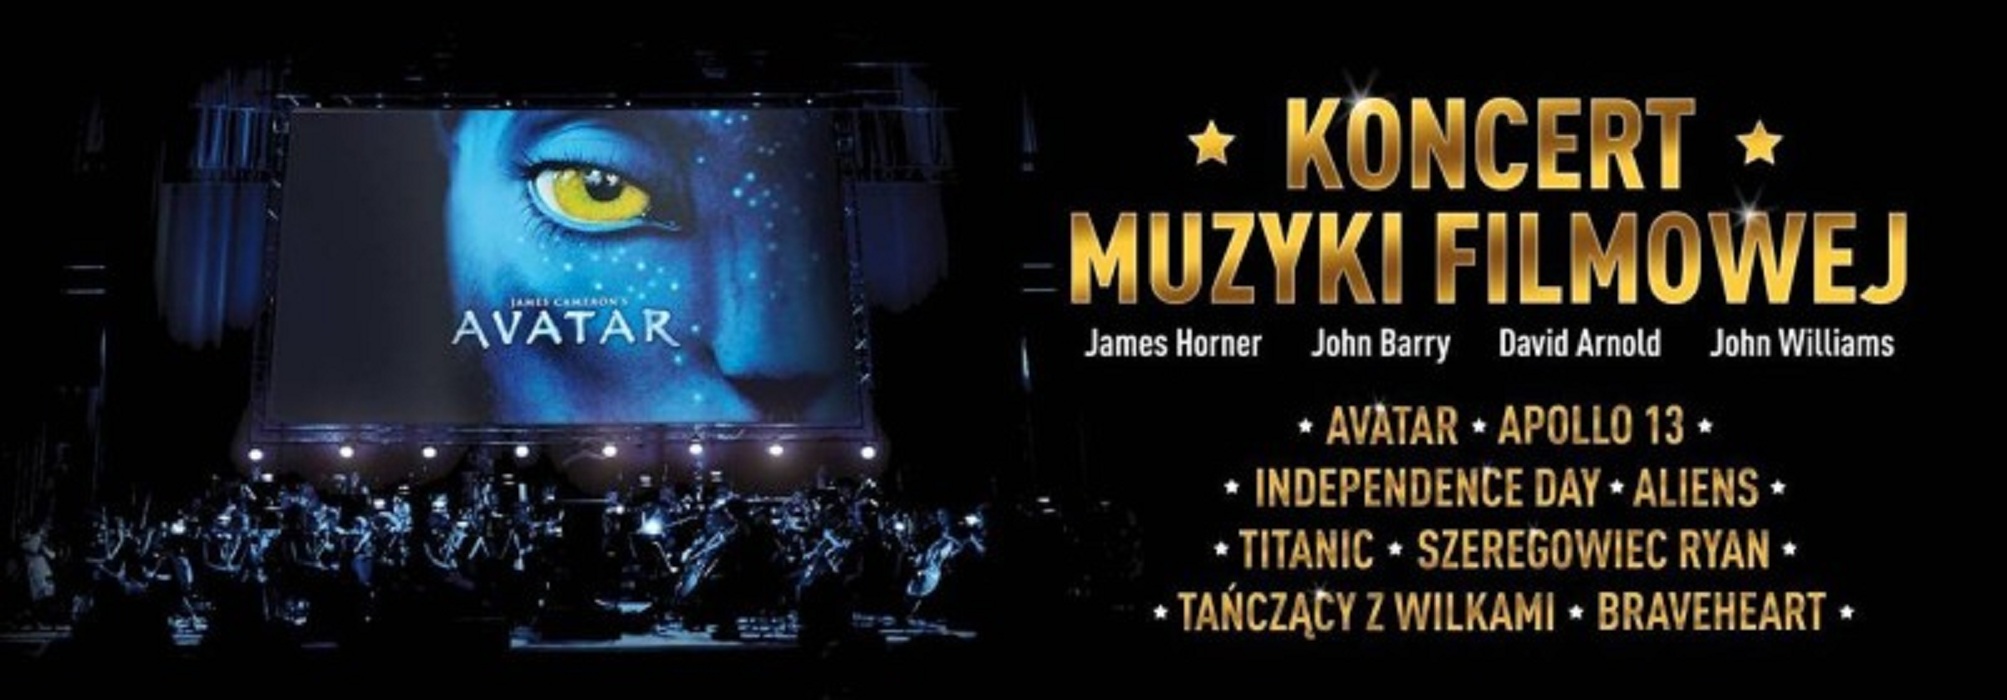 Koncert Muzyki Filmowej w Sali Kongresowej, plakat (źródło: mat. prasowe)